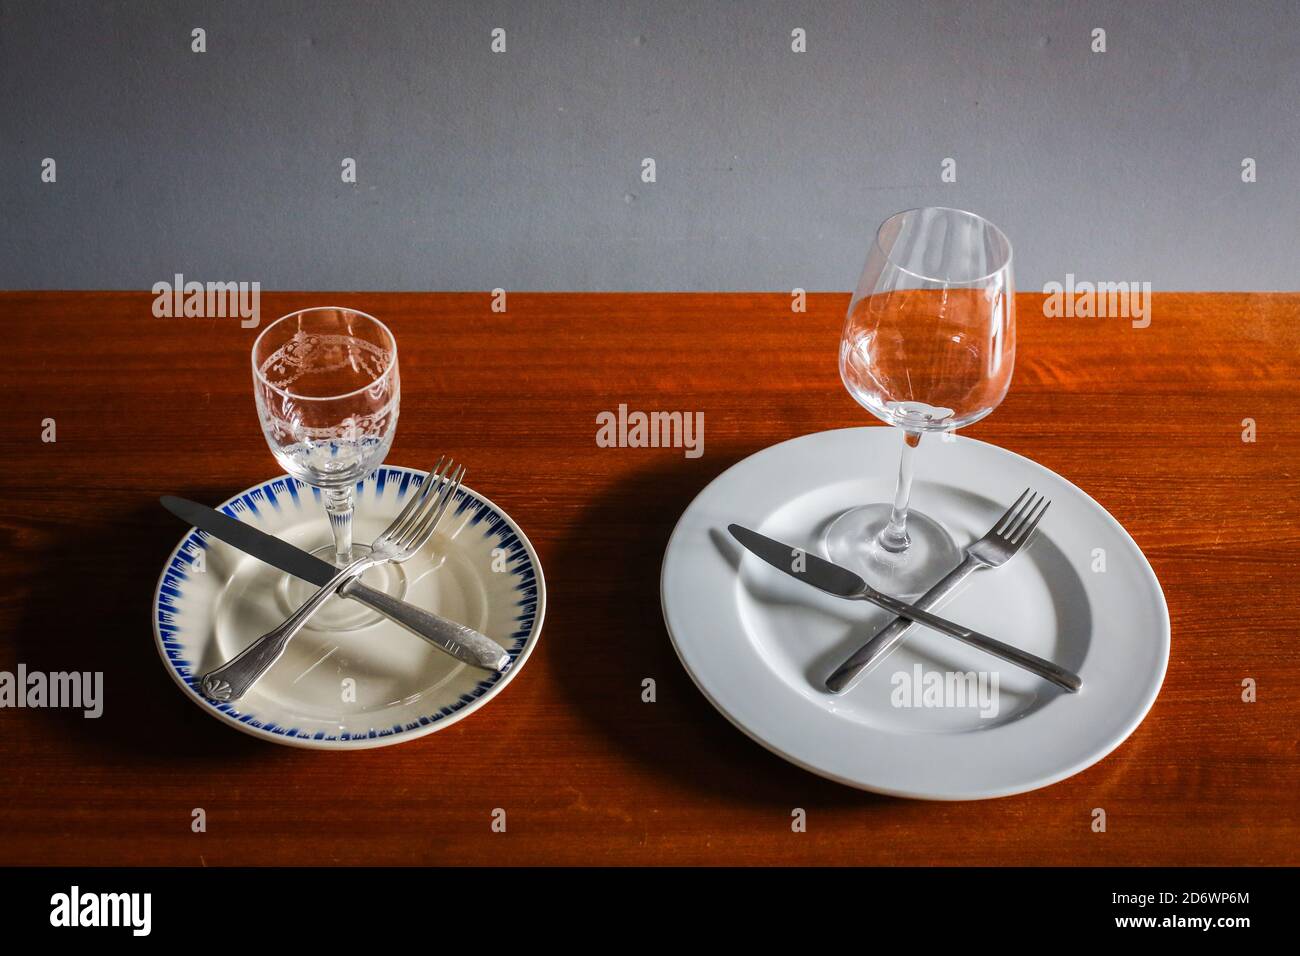 Ilustración de la diferencia en la cantidad de alimentos que se sirven para una comida en los años 50 y hoy, Francia. Foto de stock